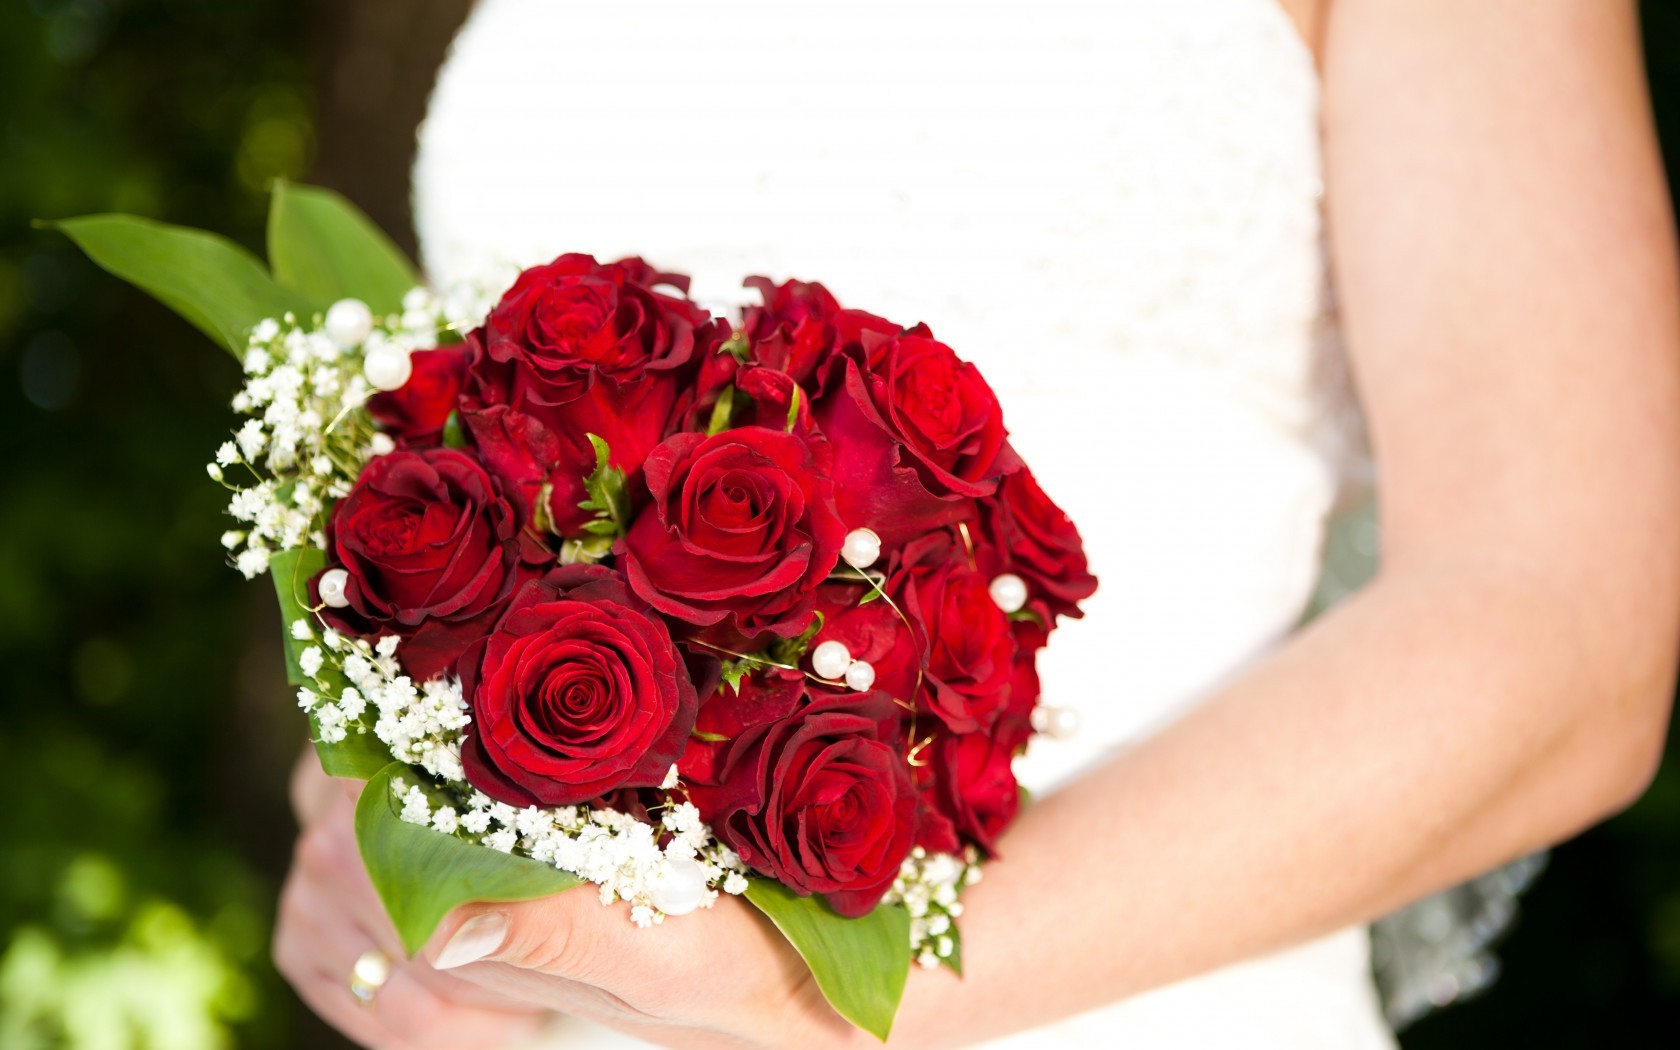  Цветы руки, цветы, розы, свадебный букет картинка, обои рабочий стол